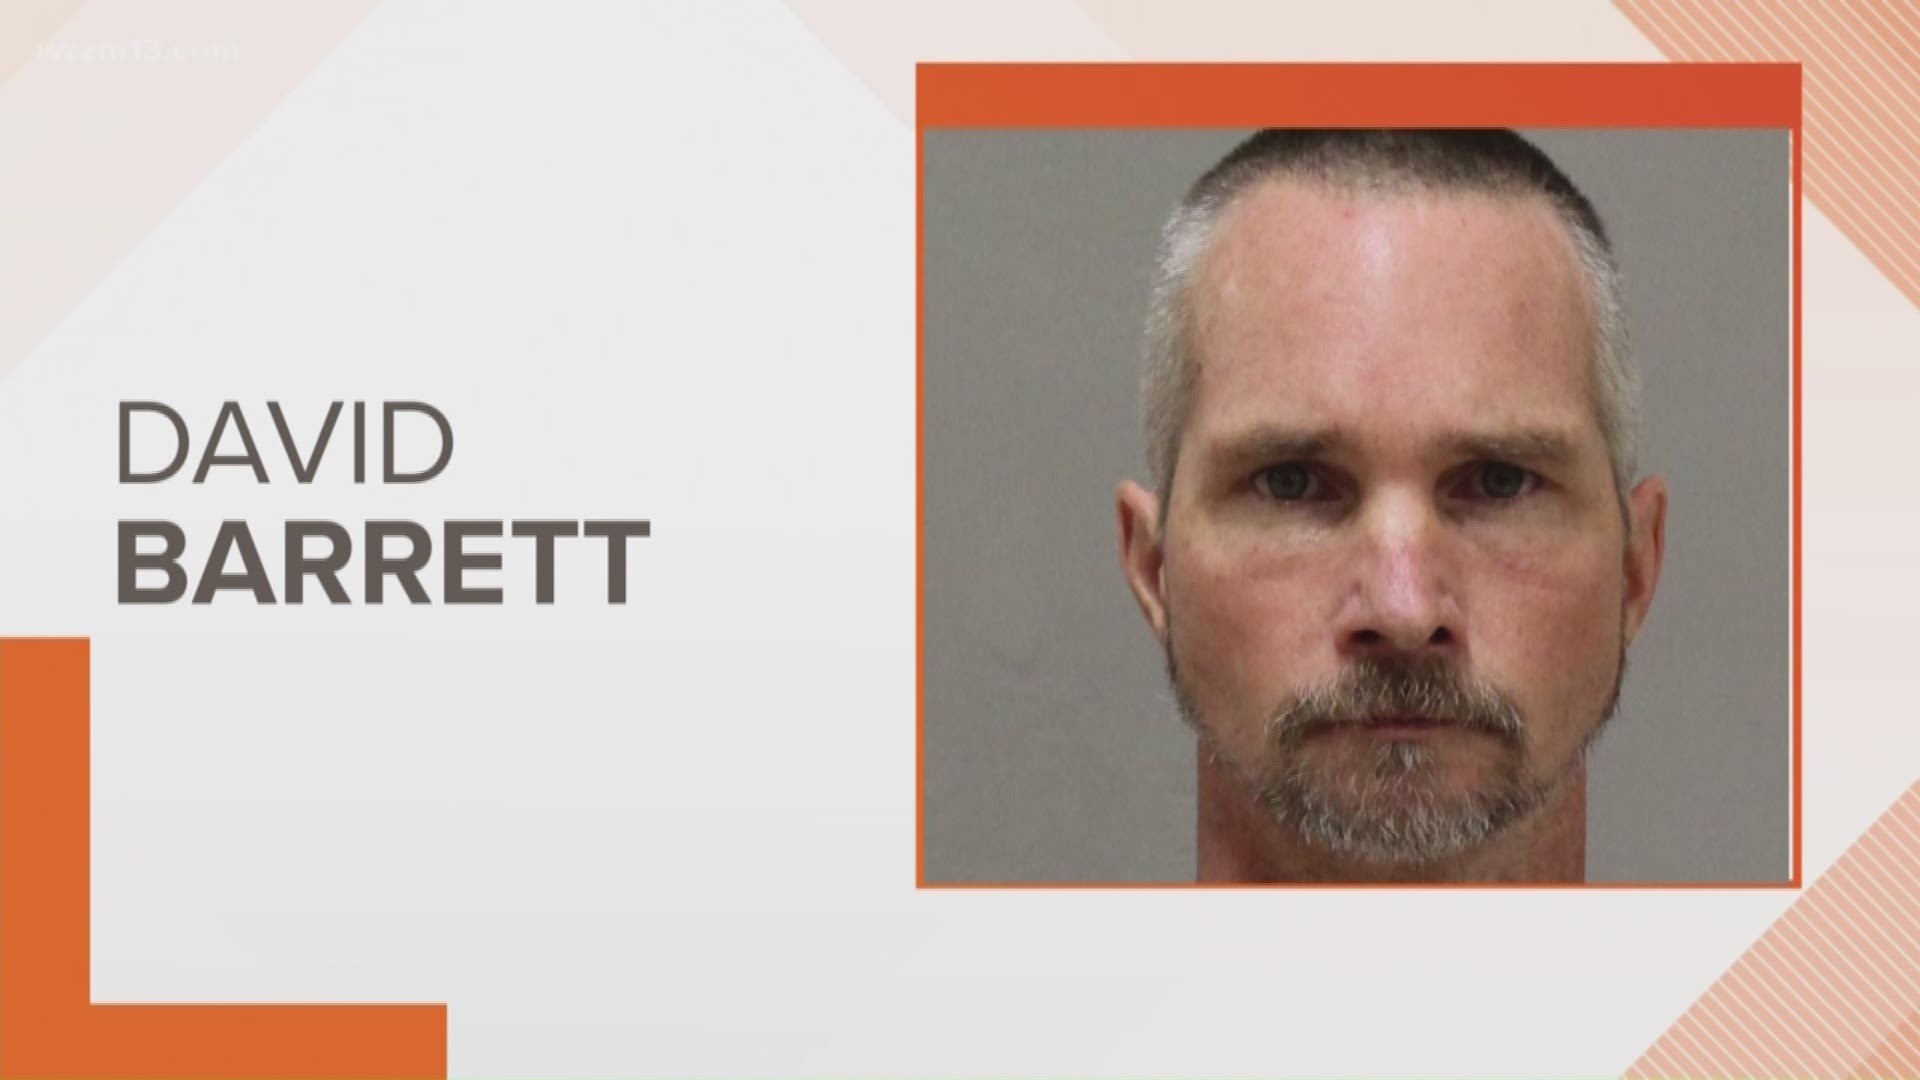 Grand Rapids man arrested after enticing children online